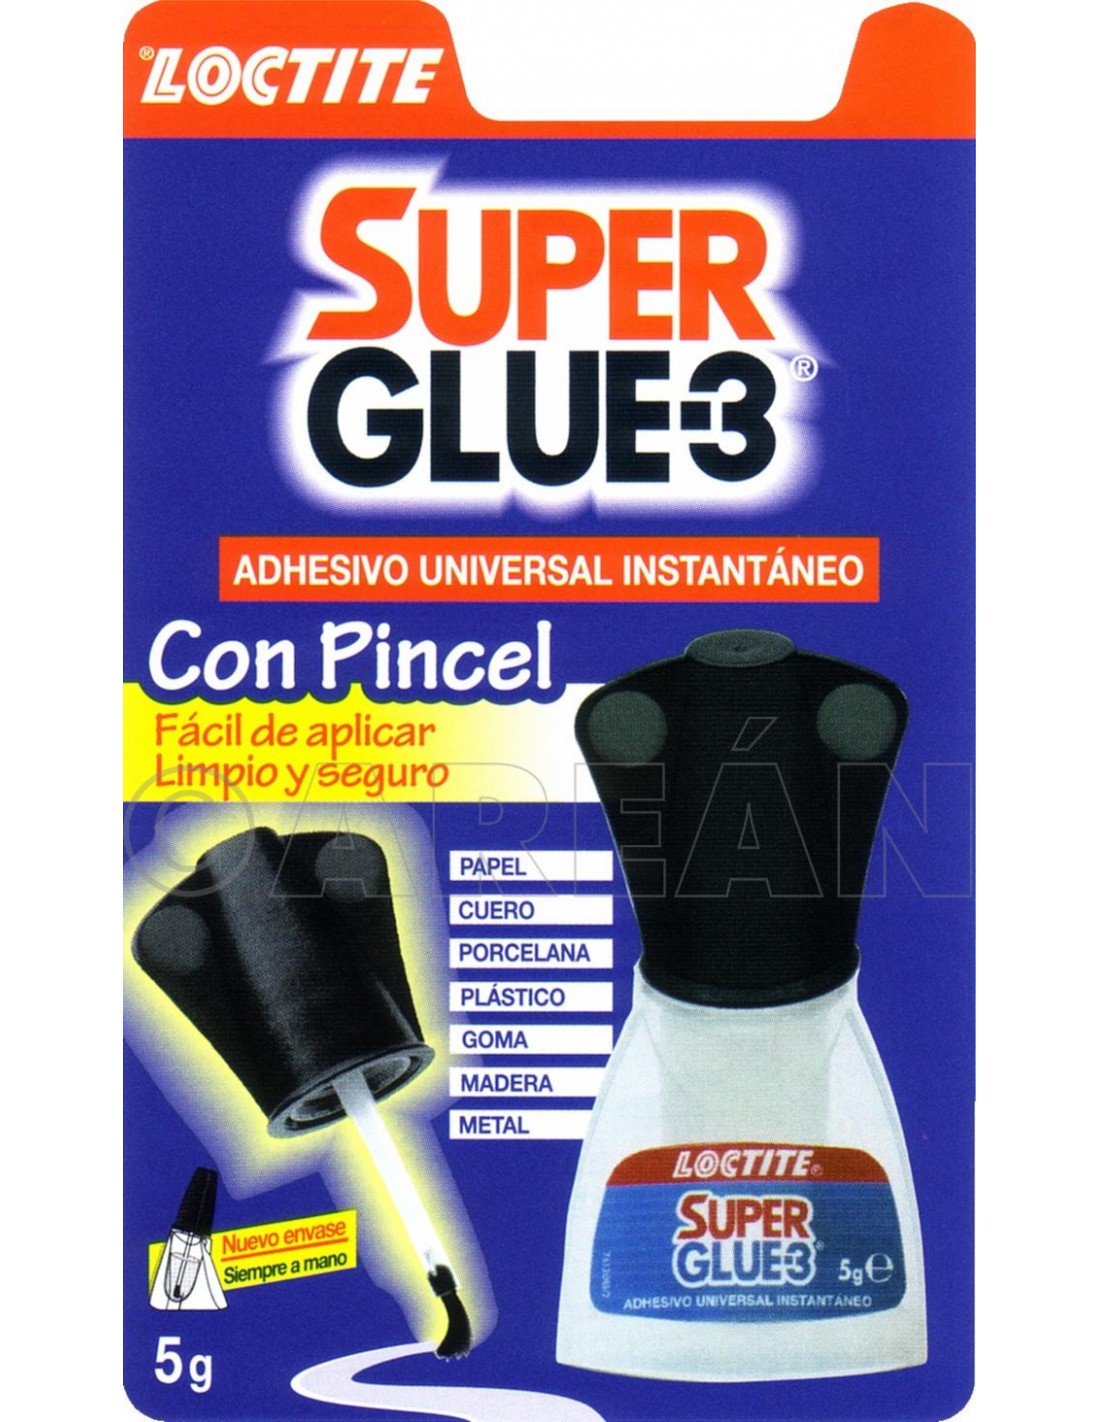 Adhesivo instantáneo Super Glue-3 LOCTITE con Pincel 5 gr